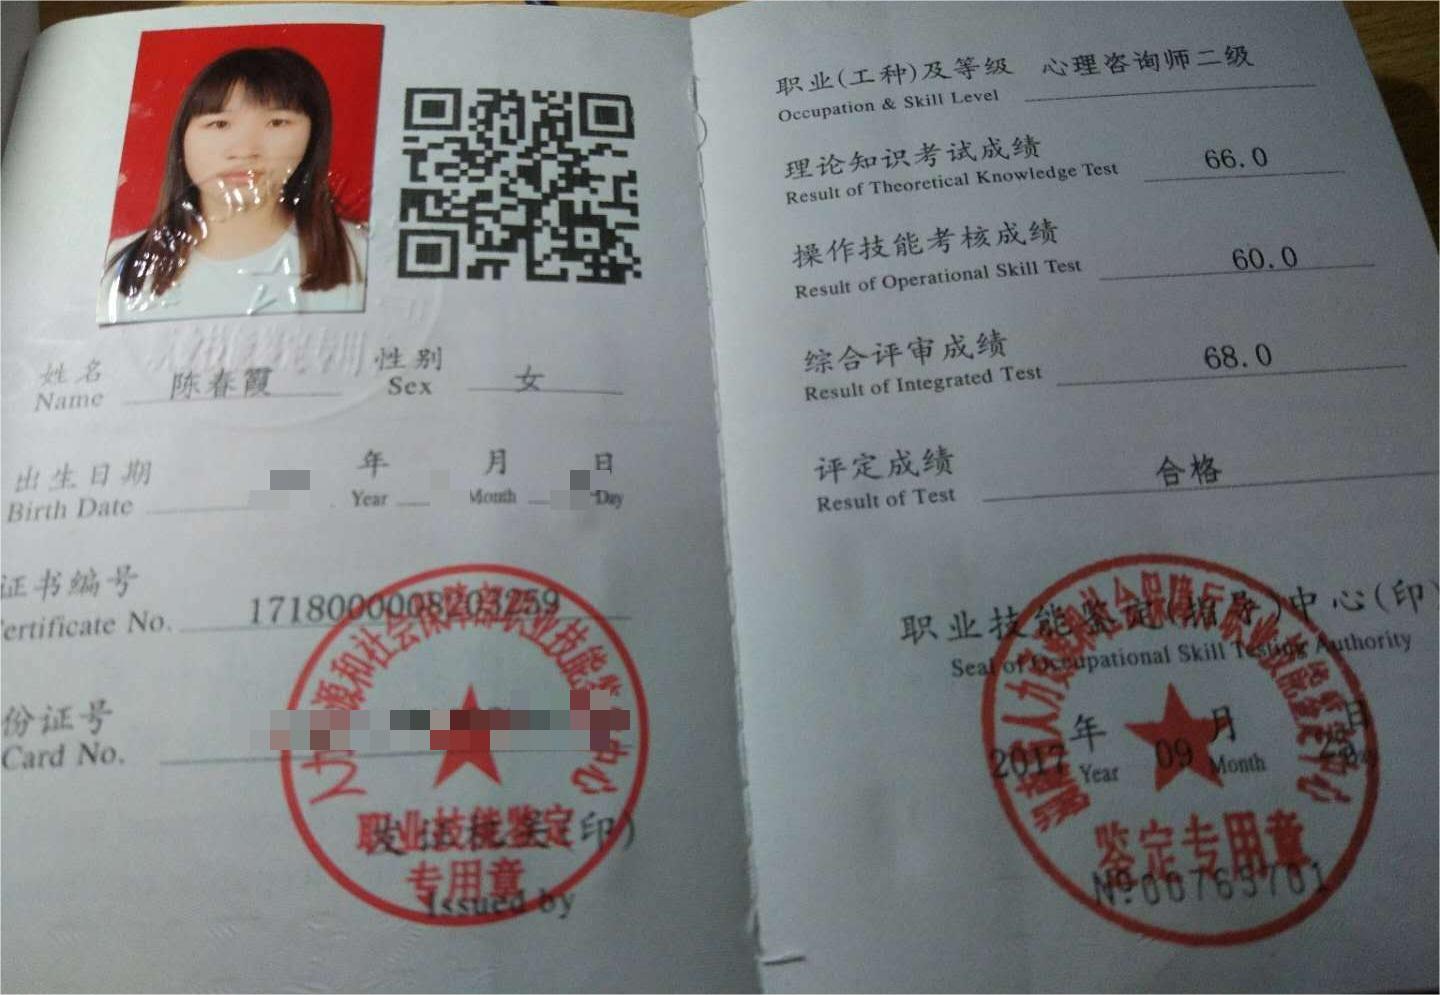 咨询师陈春霞的职业证书